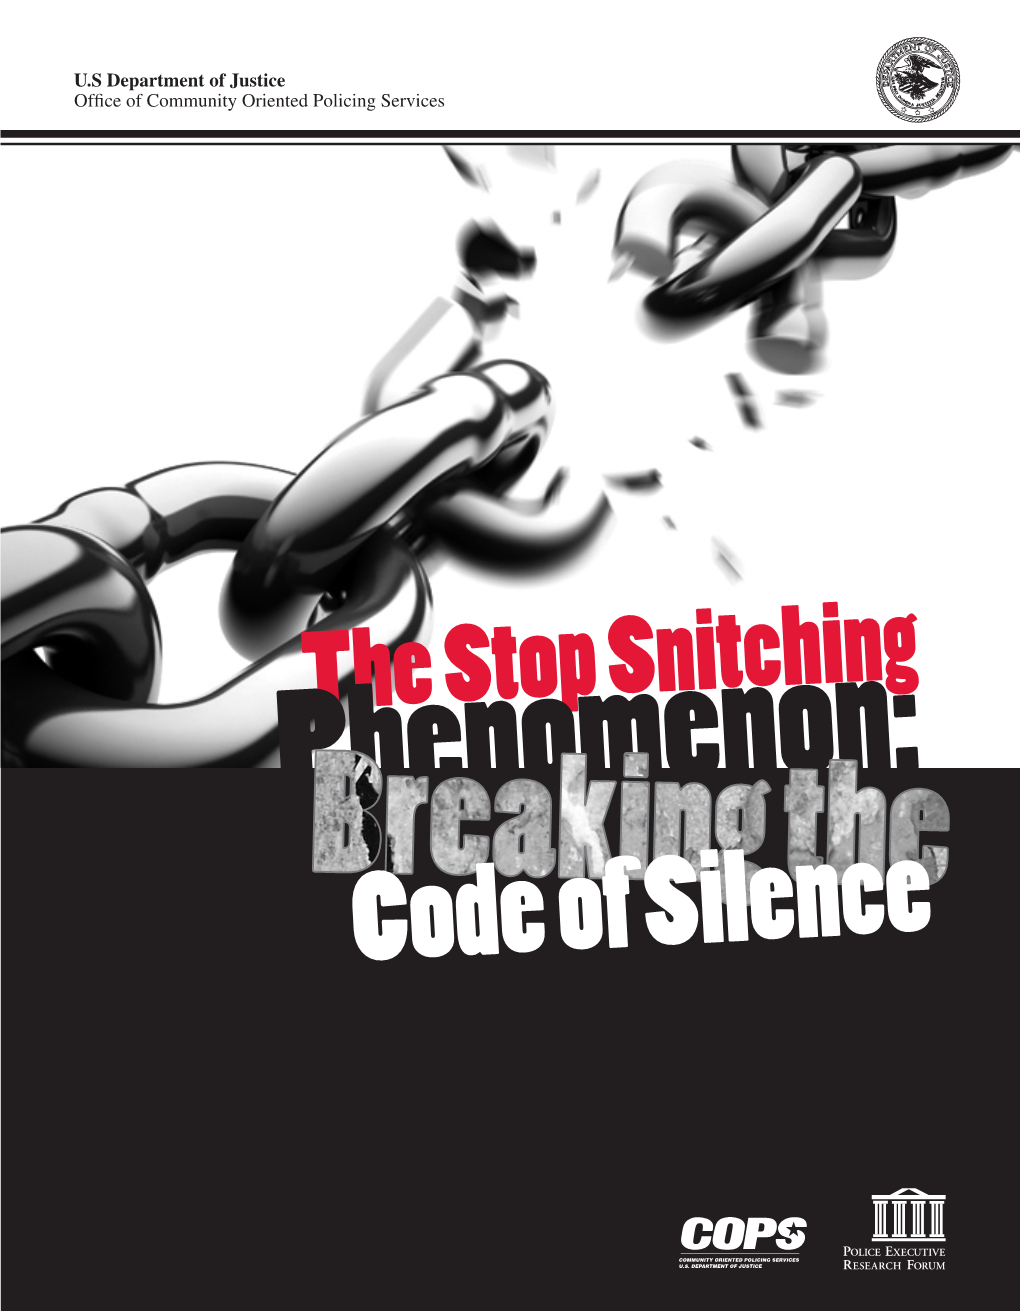 The Stop Snitching Phenomenon